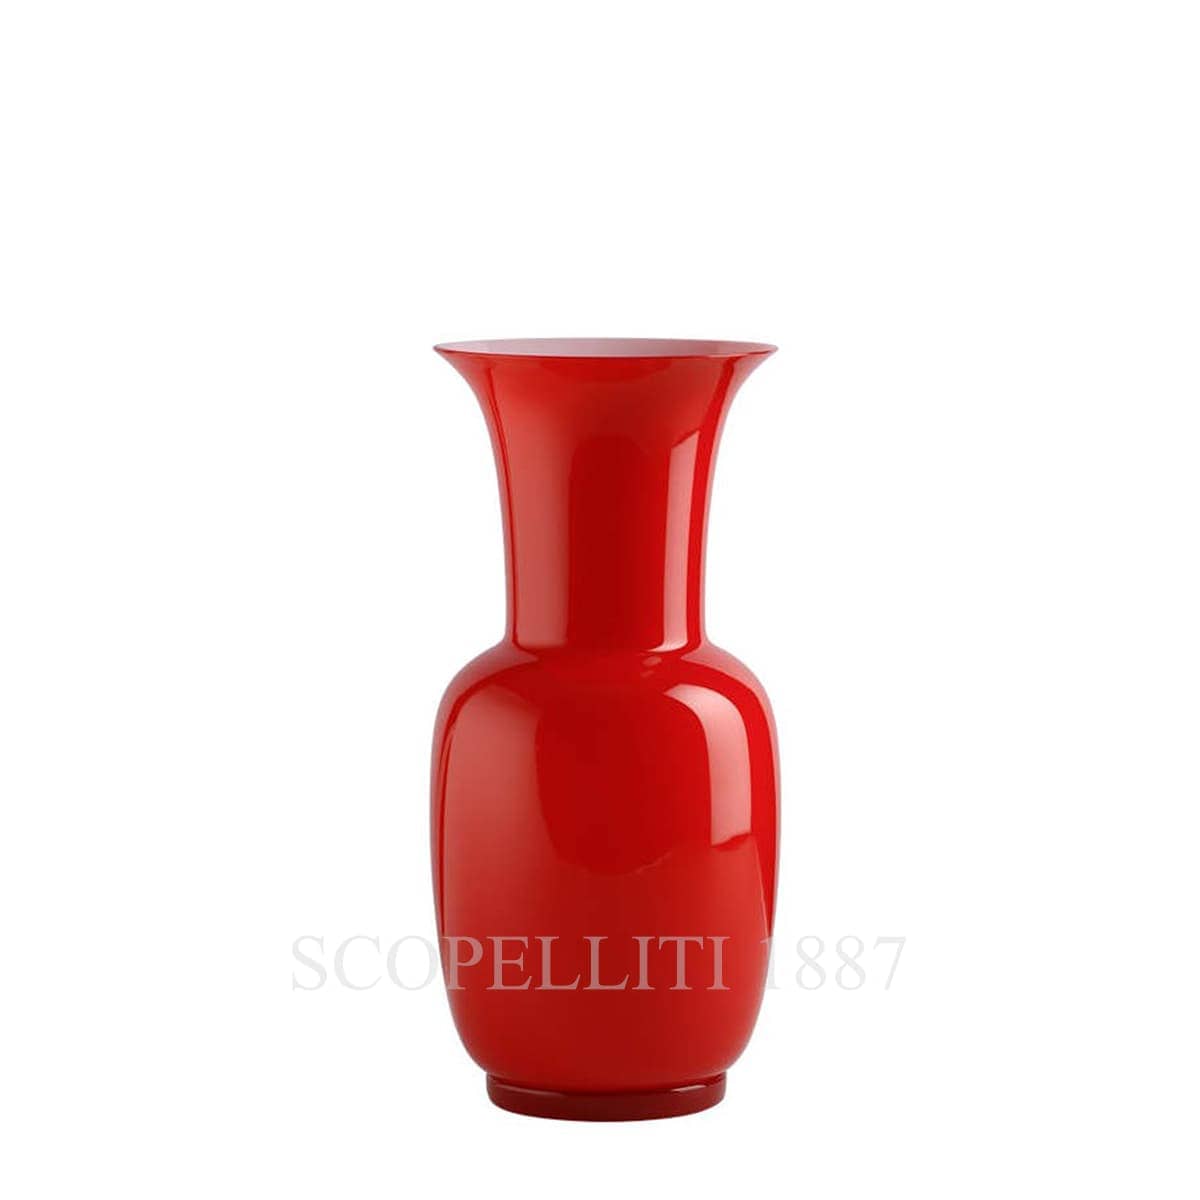 venini murano glass italian design red vase